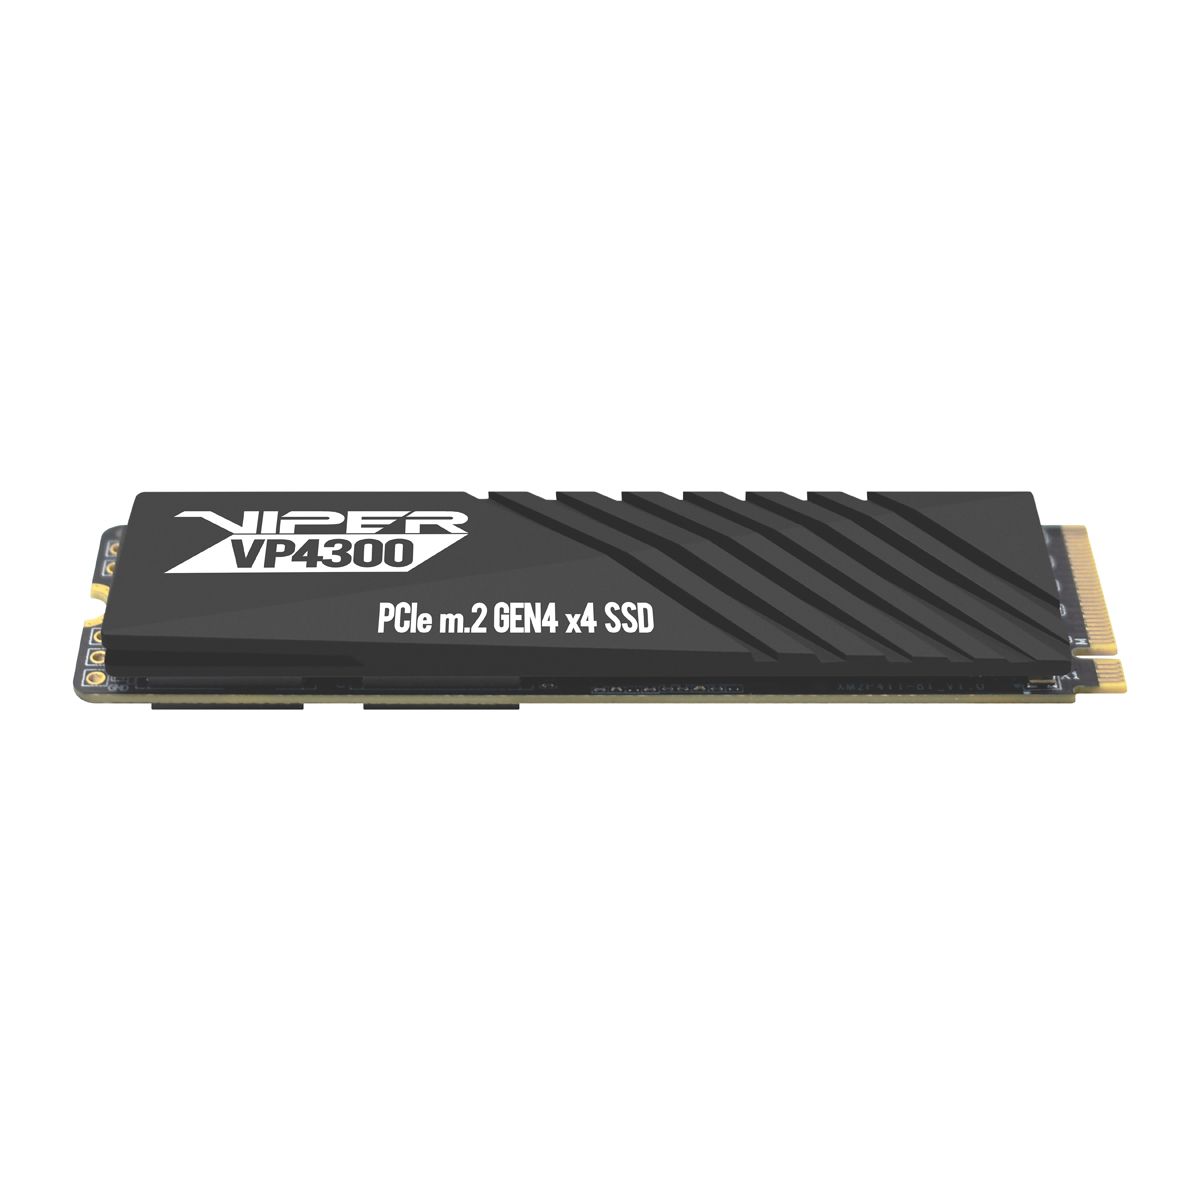 Immagine pubblicata in relazione al seguente contenuto: Gaming Setup: Viper introduce gli SSD NVMe M.2 Viper VP4300 PCIe Gen4 x4 | Nome immagine: news31943_SSD-Viper-VP4300_2.jpeg